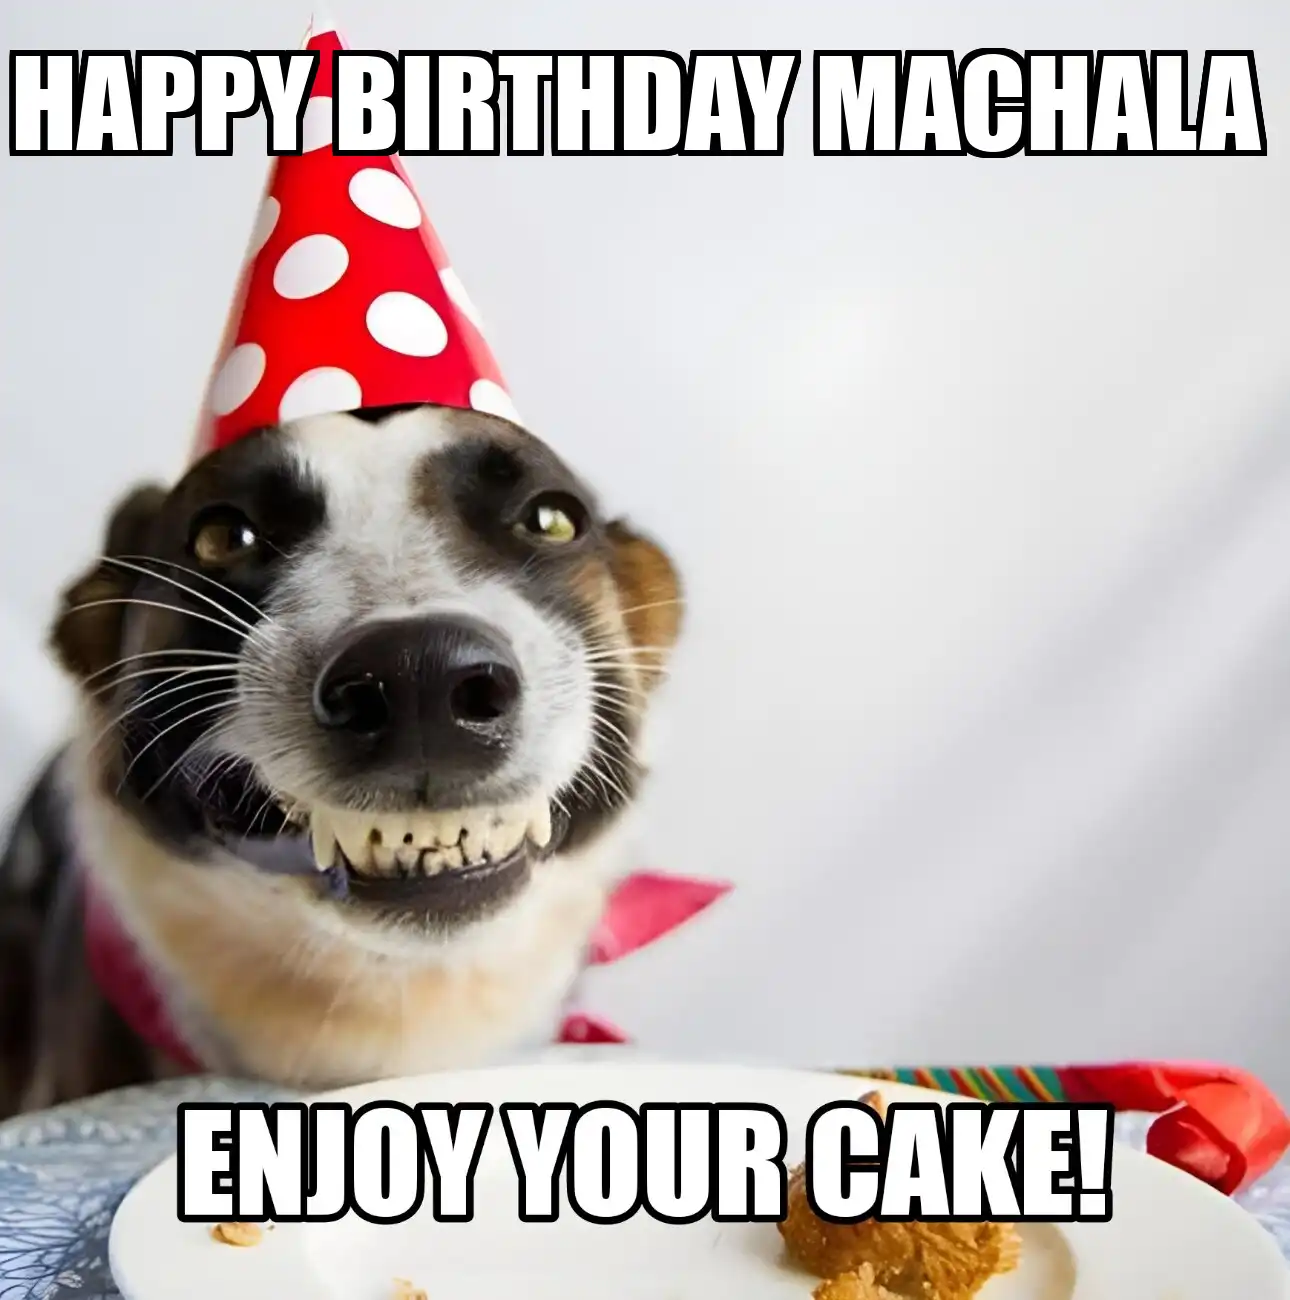 Happy Birthday Machala Enjoy Your Cake Dog Meme